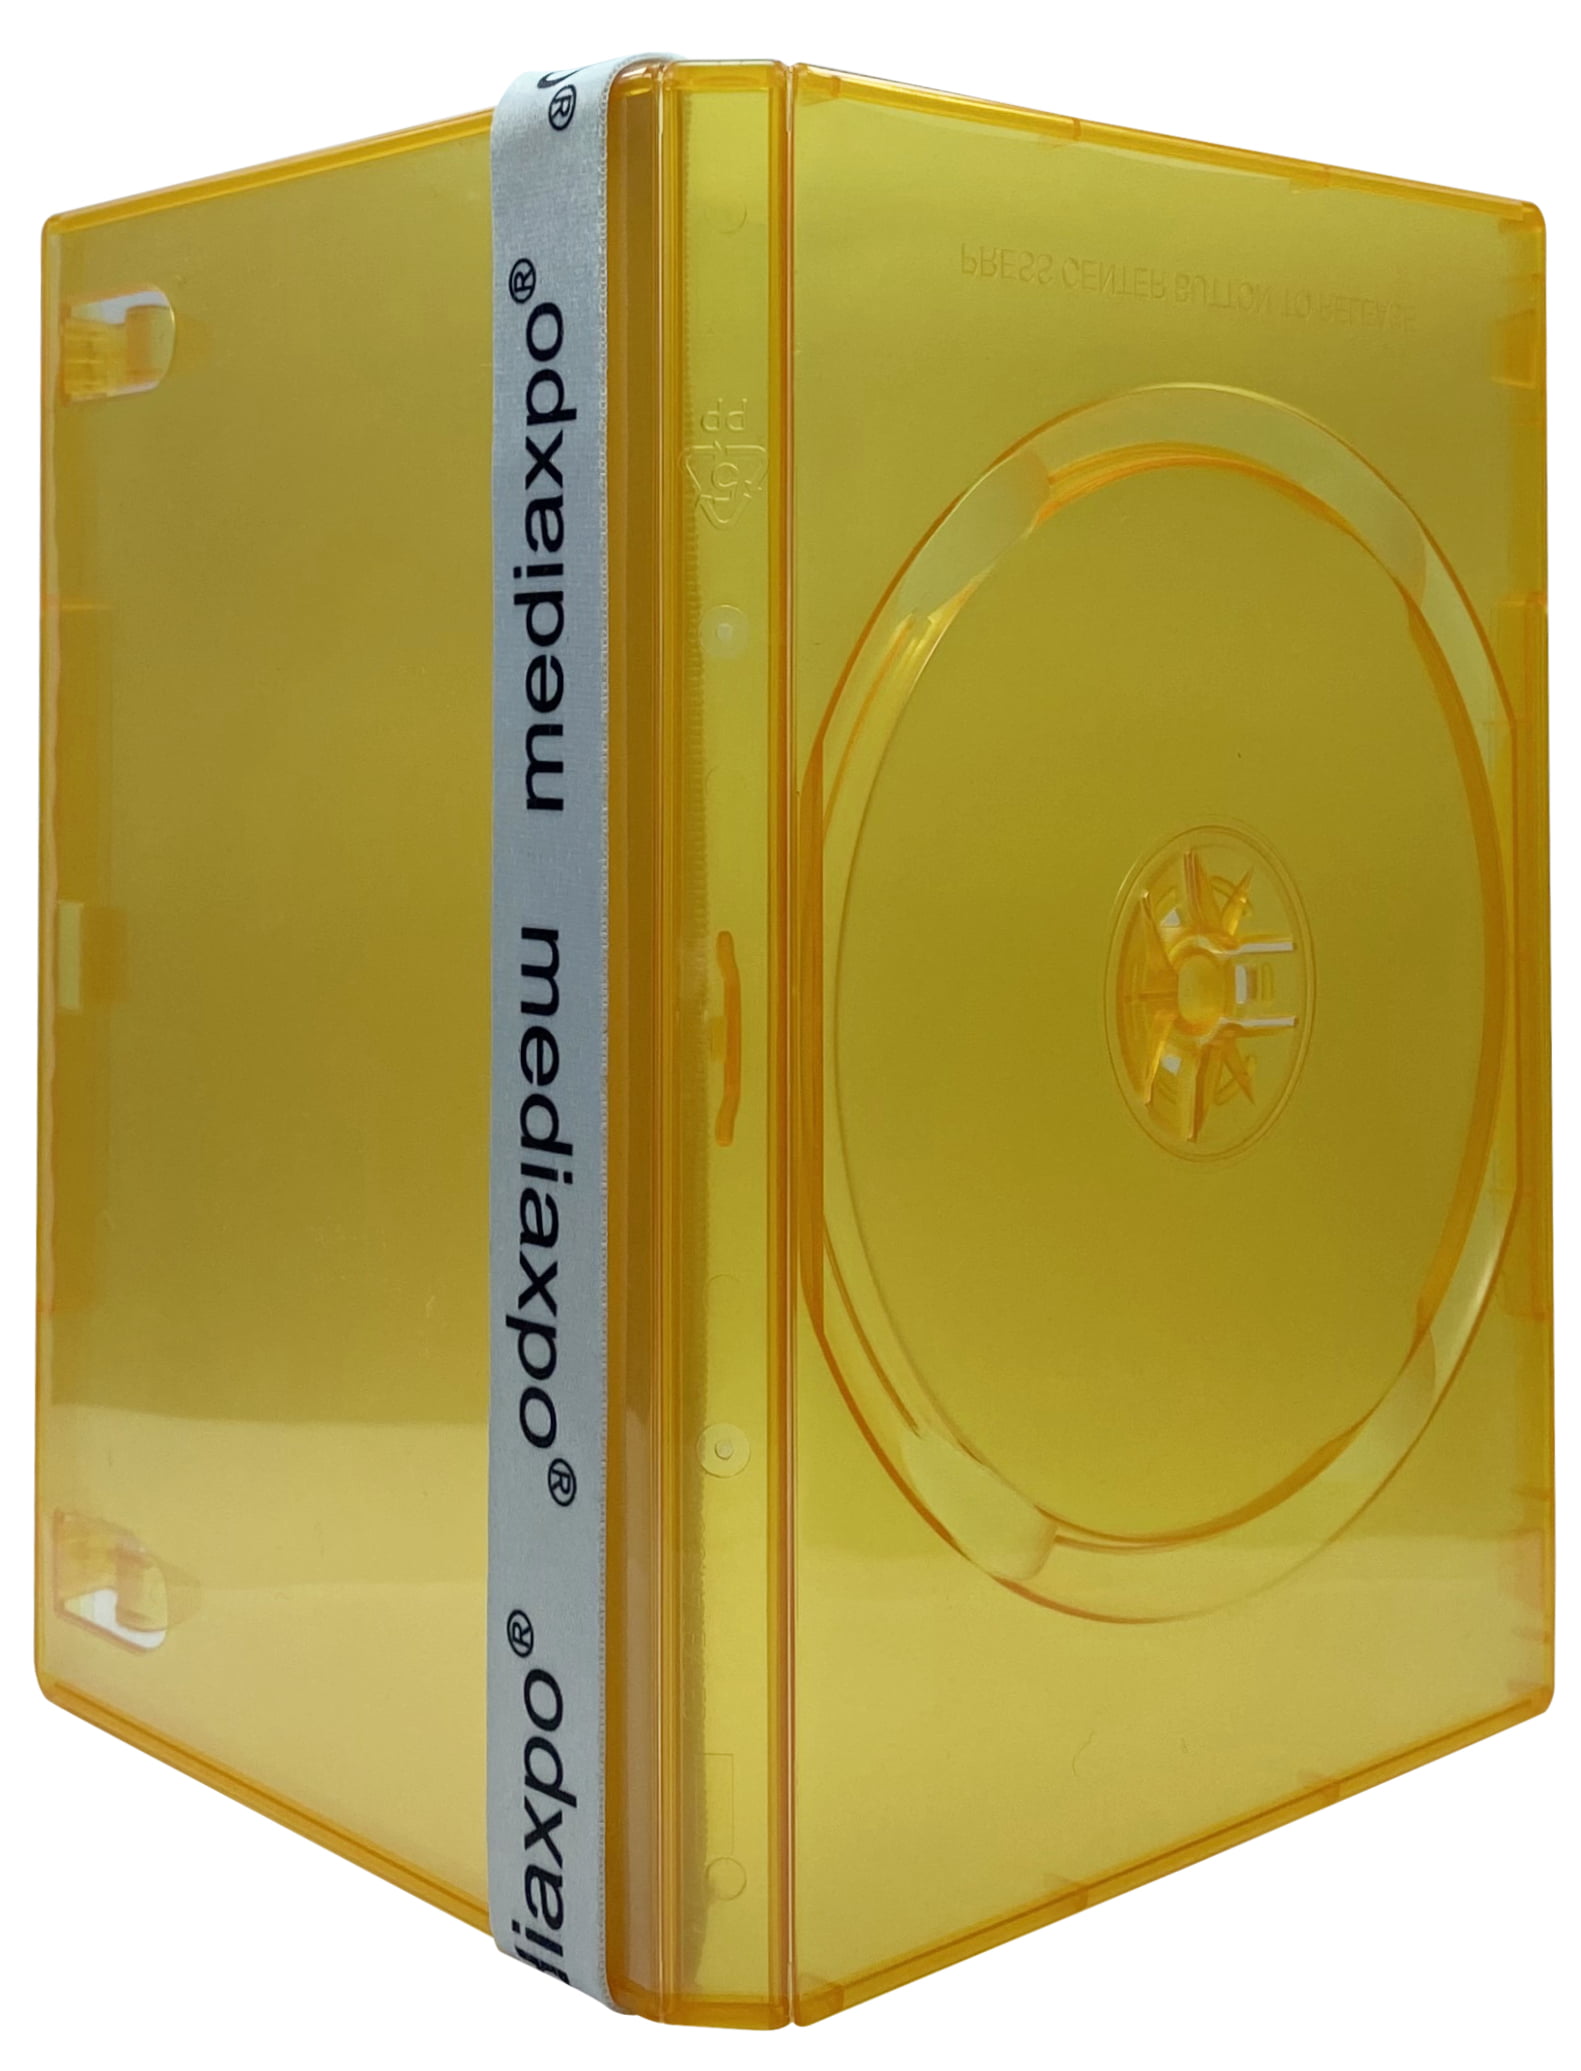 Mediaxpo CheckOutStore 2000pc. Mini DVD Cases – Sears Marketplace